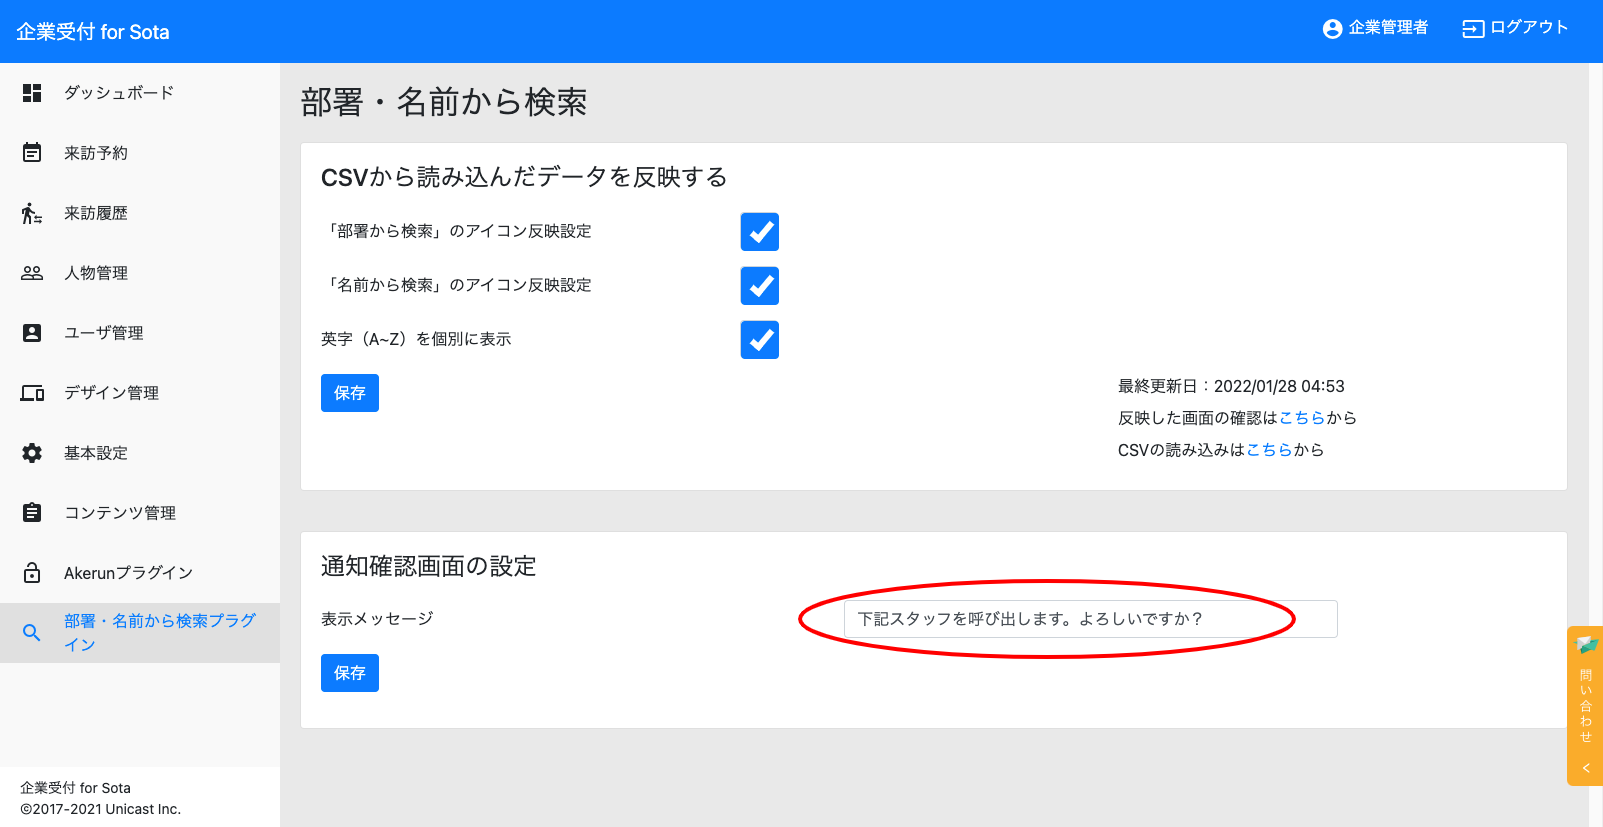 部署・名前から検索 - 企業受付 for Sota (1).png